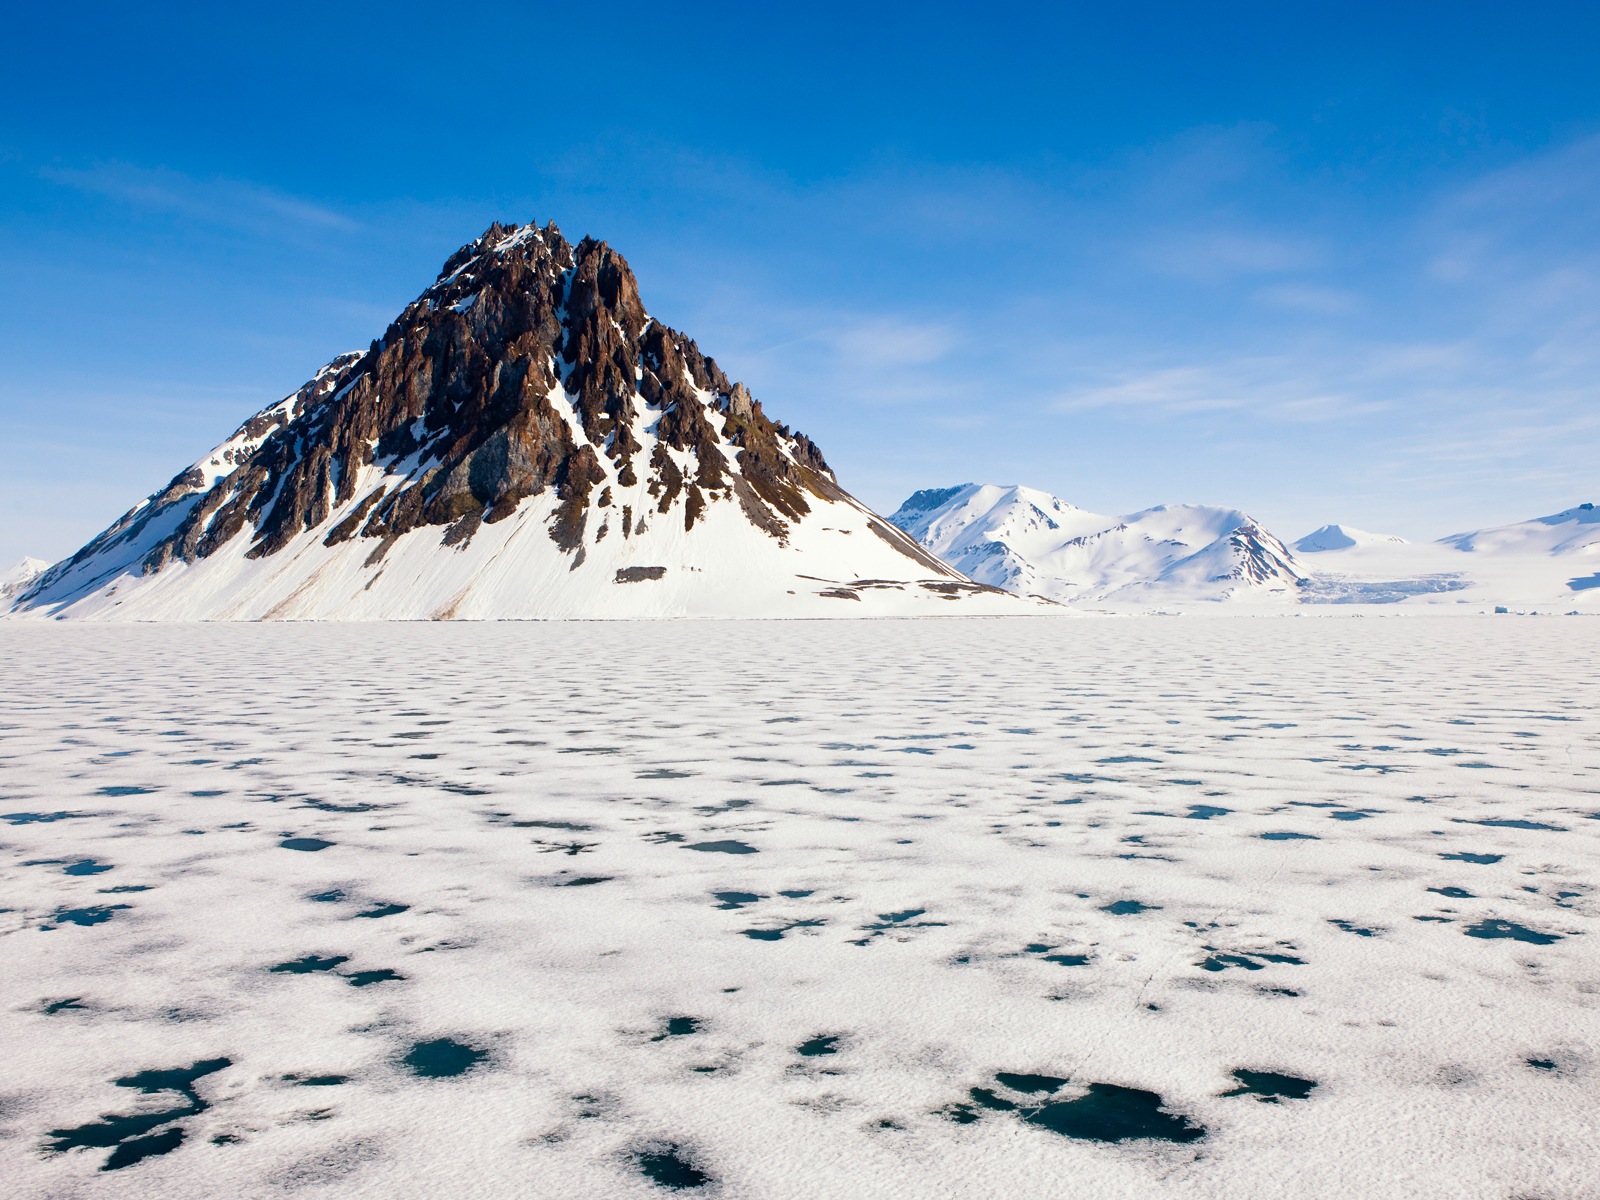 Windows 8: Fondos del Ártico, el paisaje ecológico, ártico animales #1 - 1600x1200